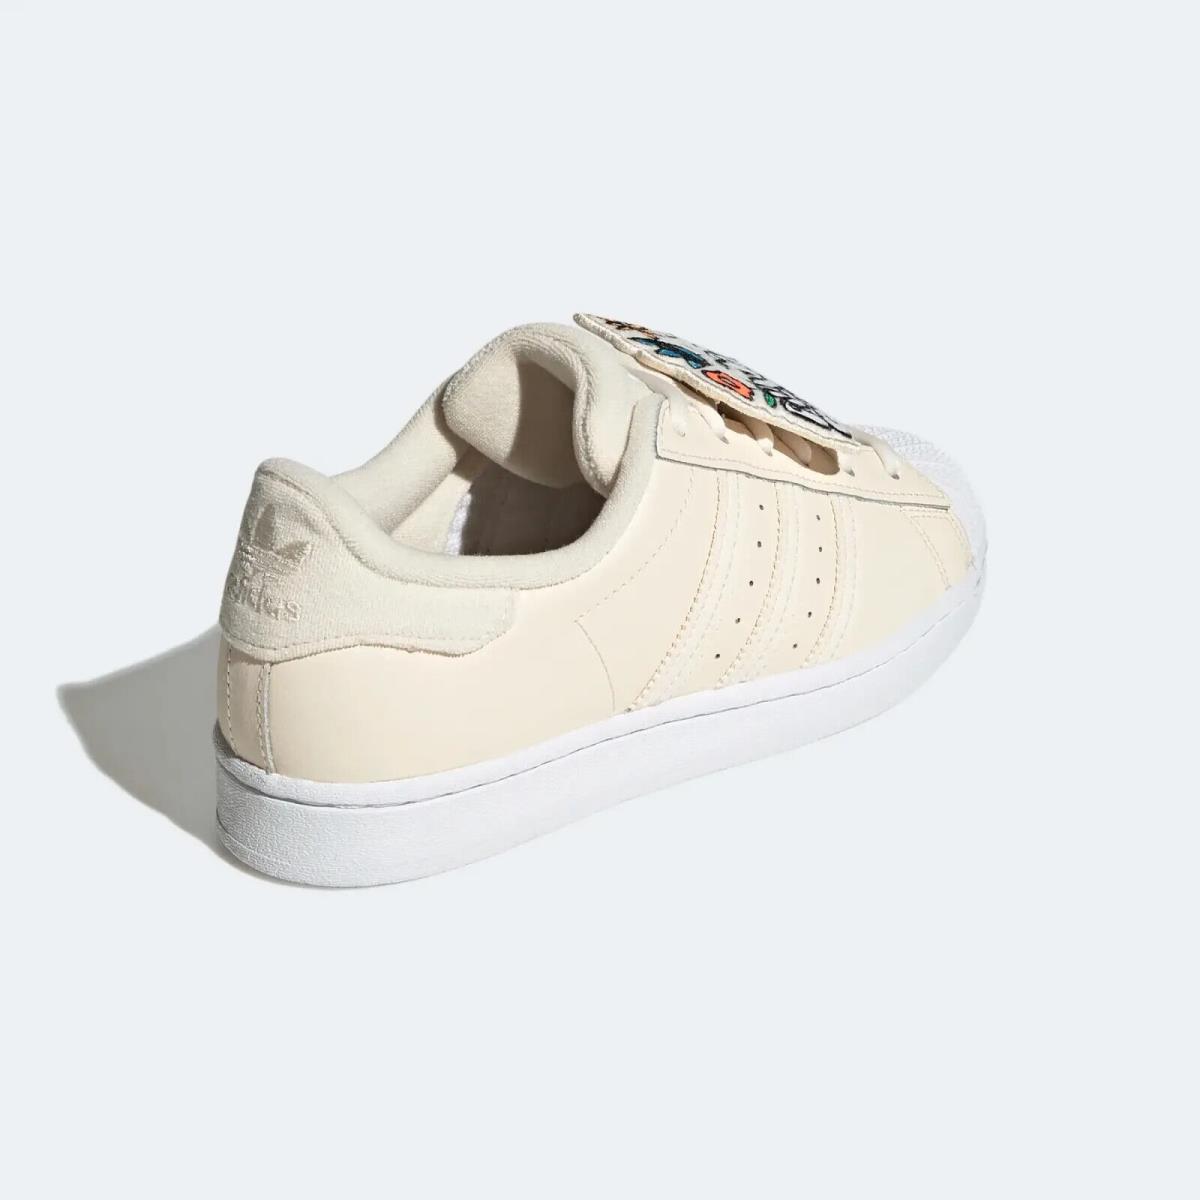 Adidas shoes SUPERSTAR - Beige/White 9